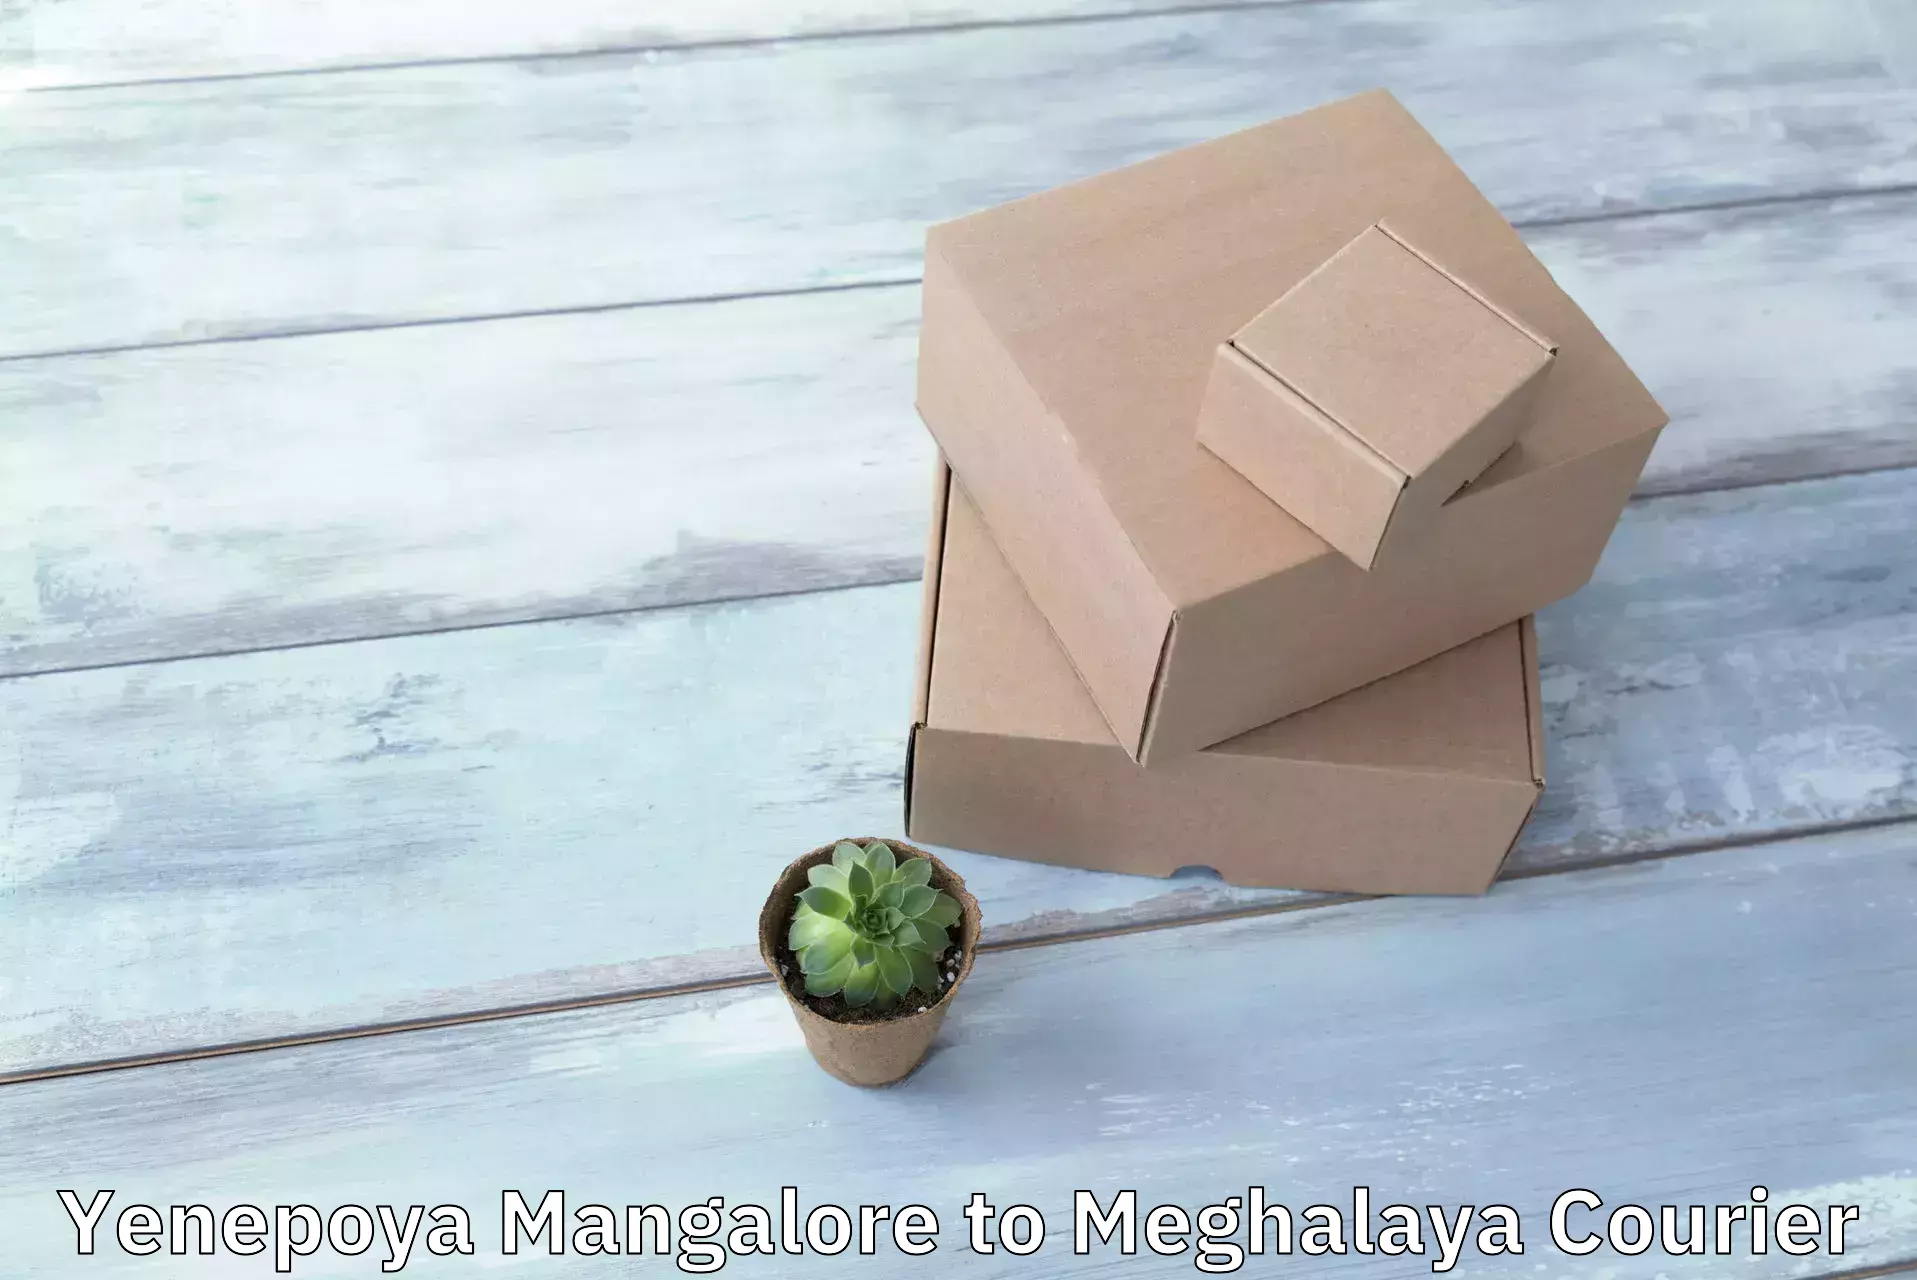 Optimized delivery routes in Yenepoya Mangalore to Meghalaya